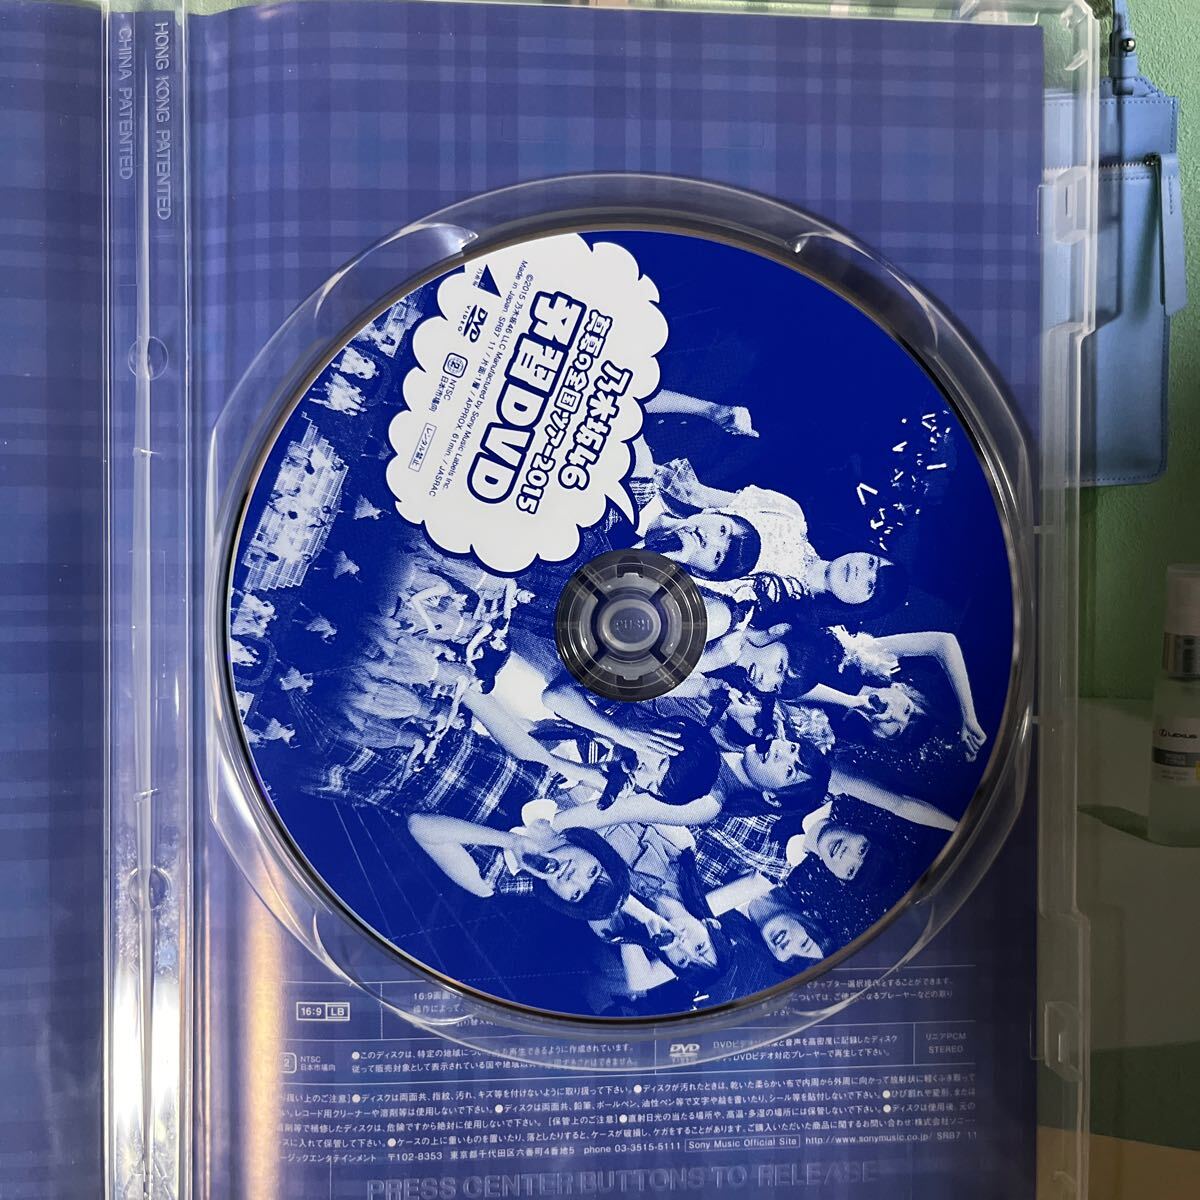 乃木坂46 公式グッズ セブンイレブン限定 真夏の全国ツアー2015 予習DVD 中古品の画像3